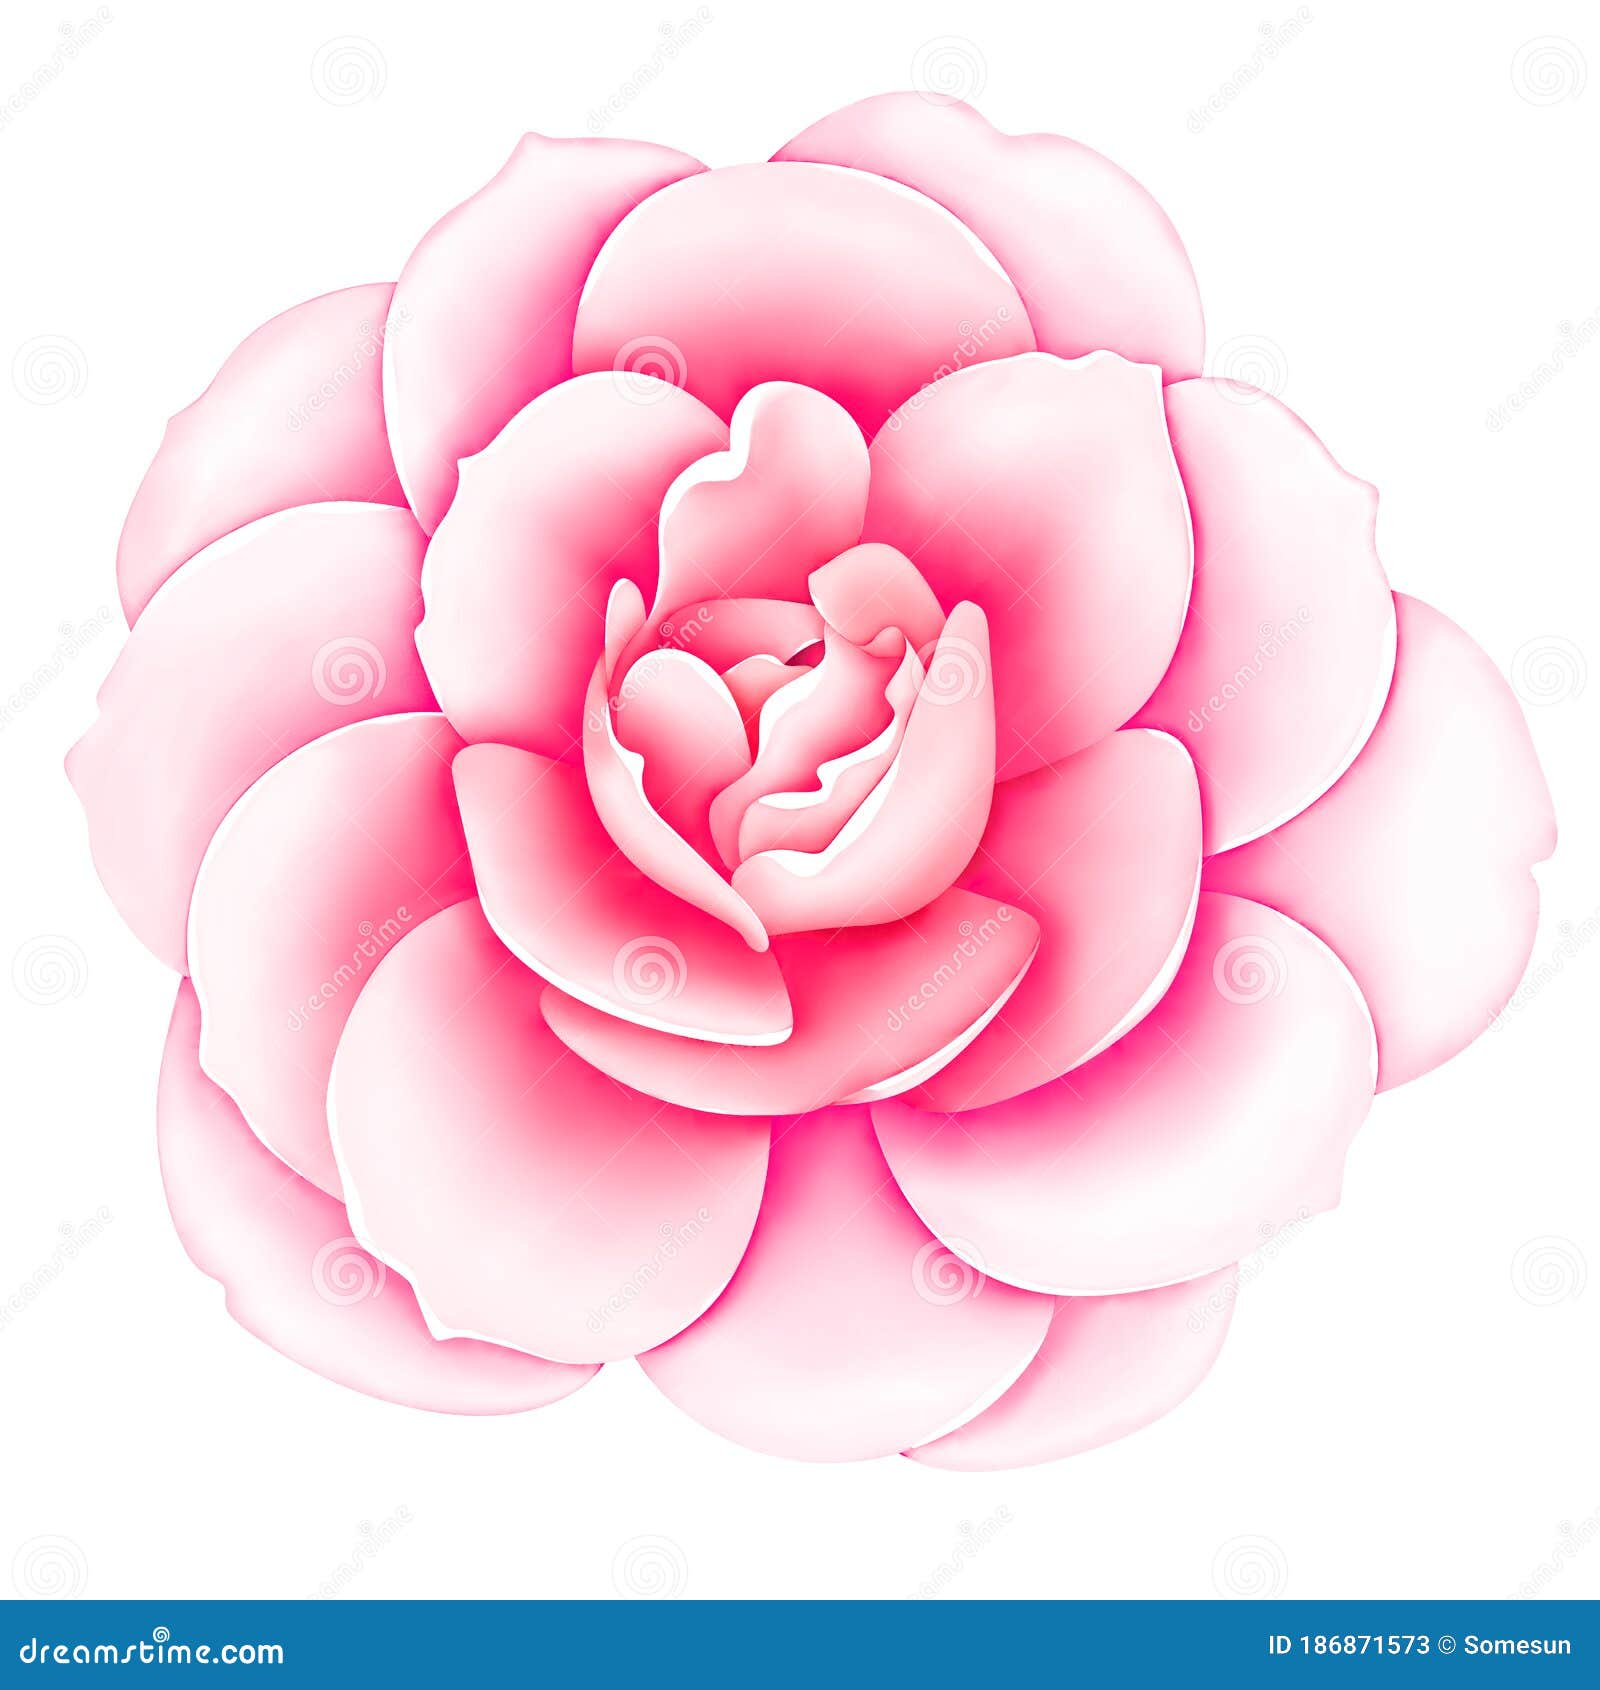 Trên hình ảnh này, bông Hoa hồng cổ điển màu hồng trắng trên nền trắng sáng chắc chắn sẽ mang lại cho bạn những cảm xúc tốt đẹp nhất. Sự tươi mới của chúng sẽ làm bạn tự tin hơn để tìm kiếm những điều mới mẻ trong cuộc sống của mình.